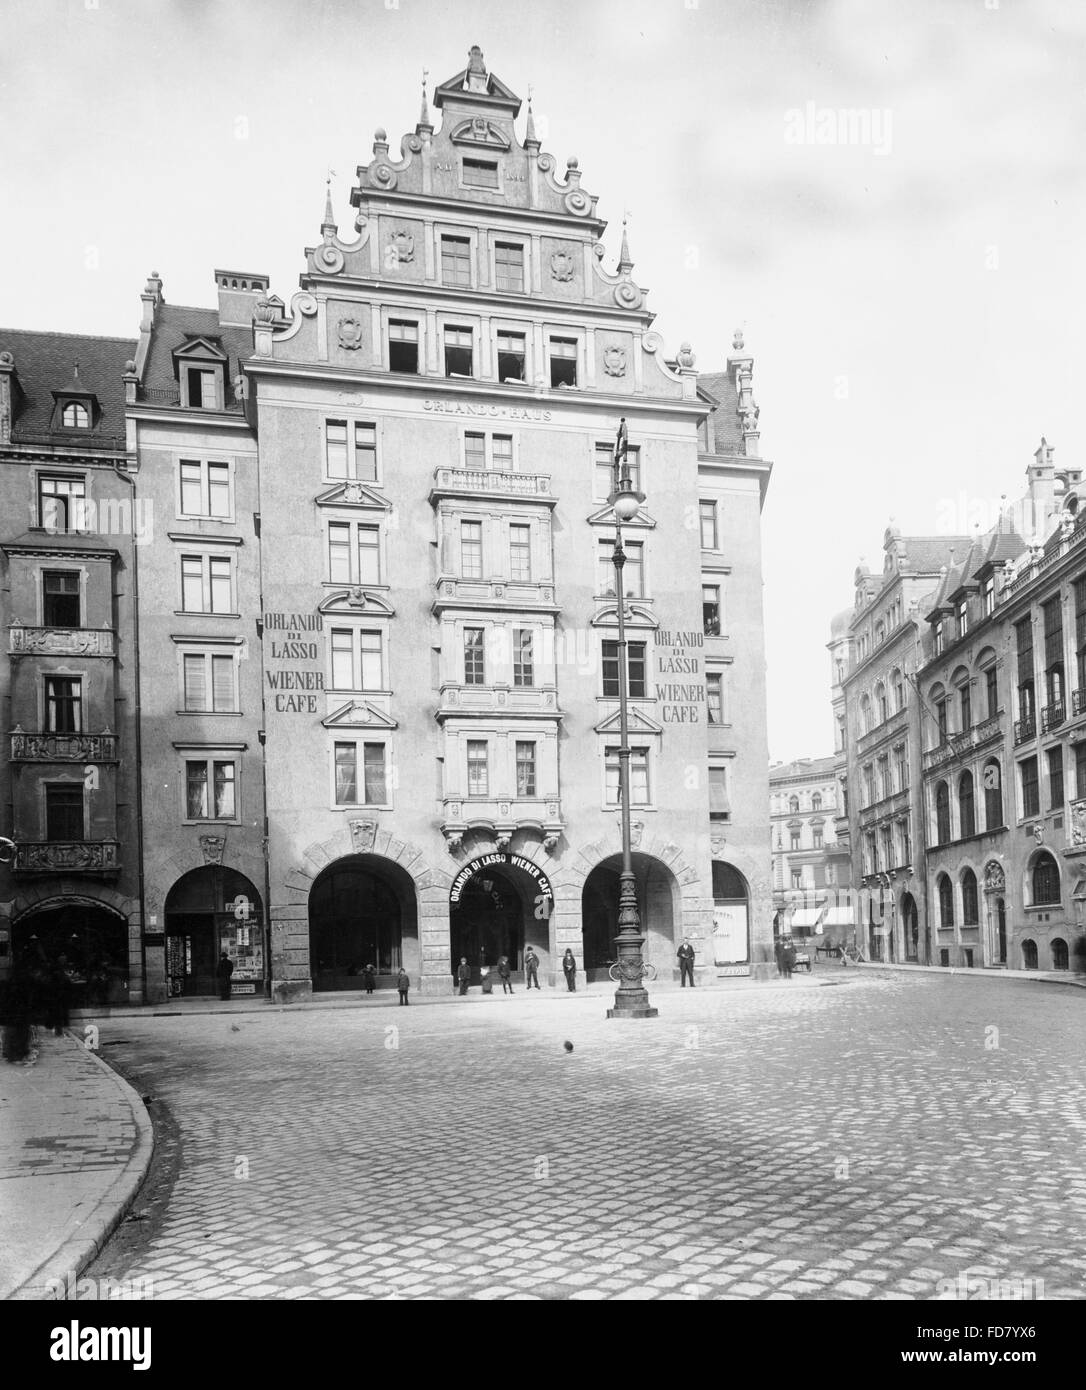 The Wiener Cafe Orlando di Lasso at Platz in Munich, 1900-1913 Stock Photo